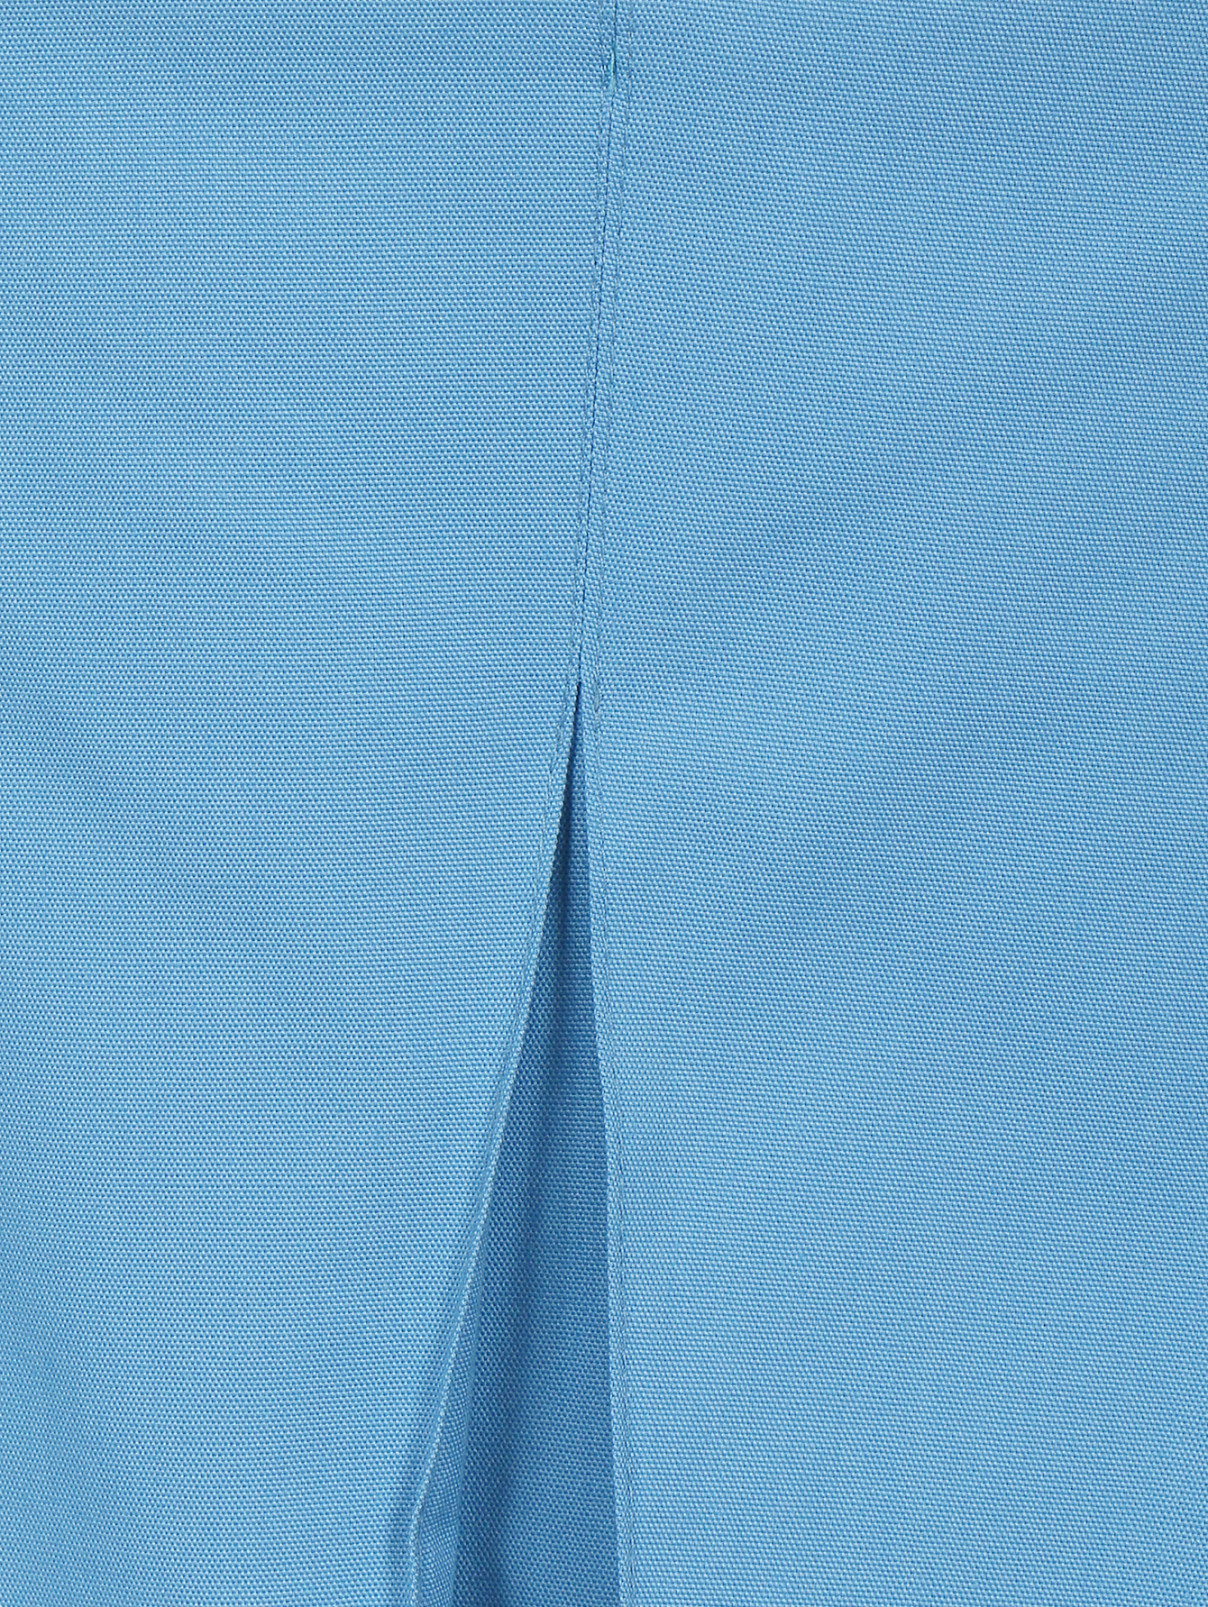 Юбка-трапеция из хлопка Jil Sander Navy  –  Деталь  – Цвет:  Синий